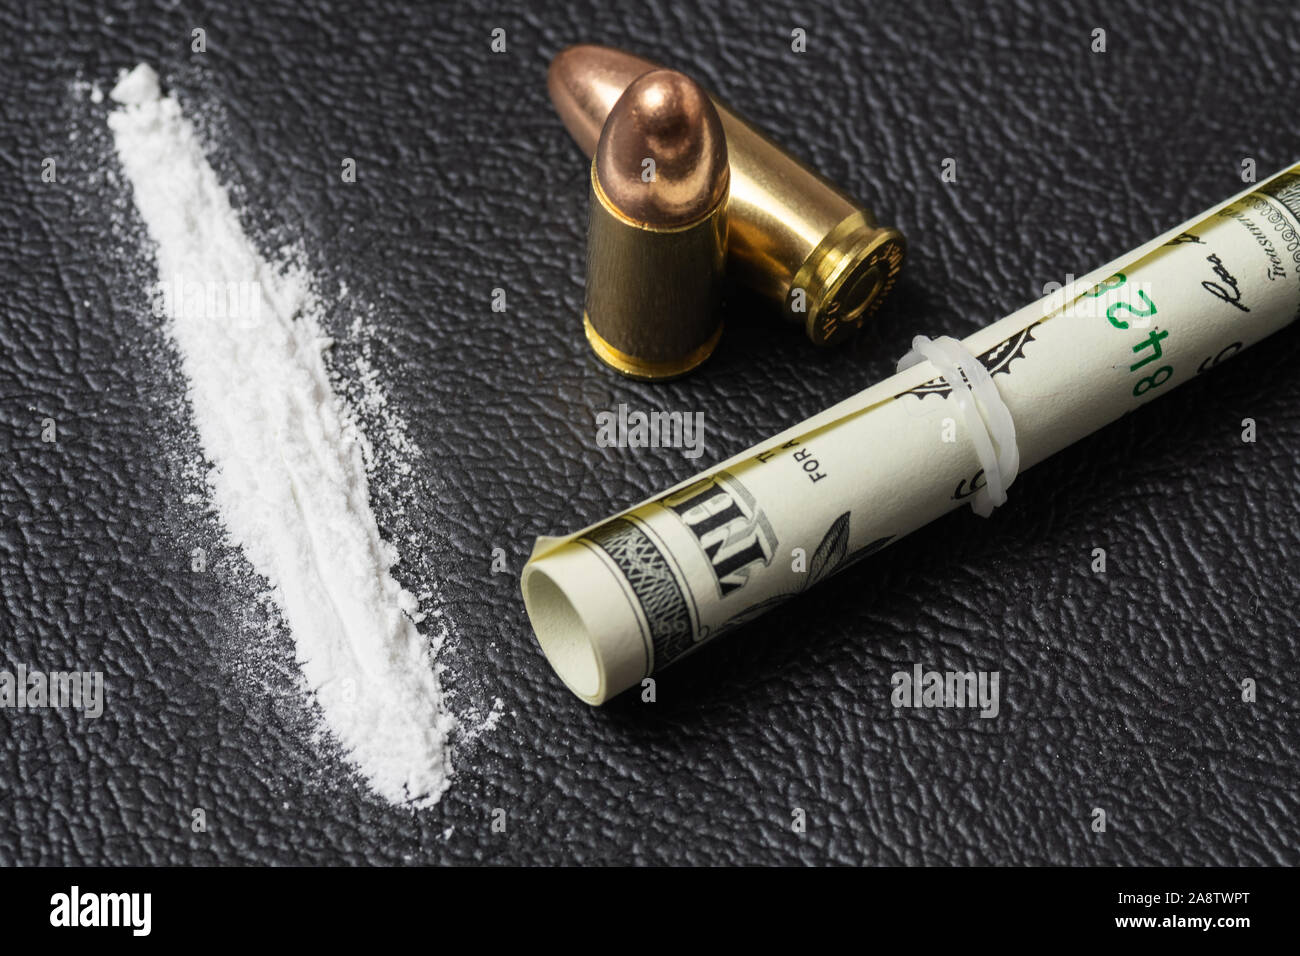 Dollarschein blättern, Kokainpulver und zwei 9-mm-Kugeln auf schwarzem Untergrund. Konzeptionelle mockup illegaler Drogenhandel, Menschenhandel, Krieg gegen Drogen. Stockfoto